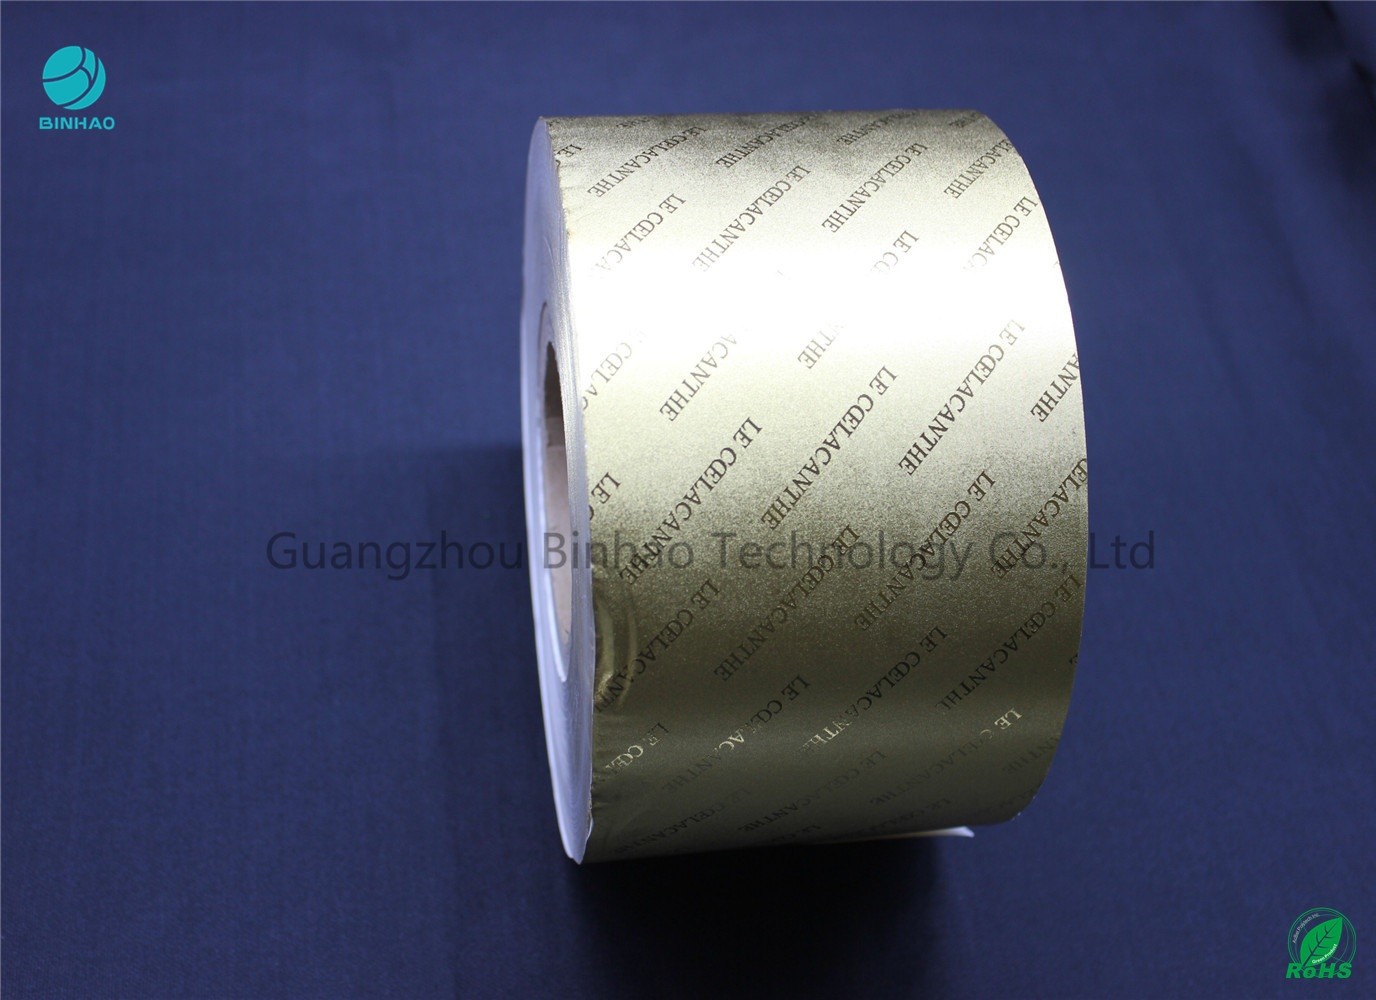 Zusammengesetztes Gold-/Silber-Aluminiumfolie-Papier mit Prägungsmarkennamen oder Logo 55gsm